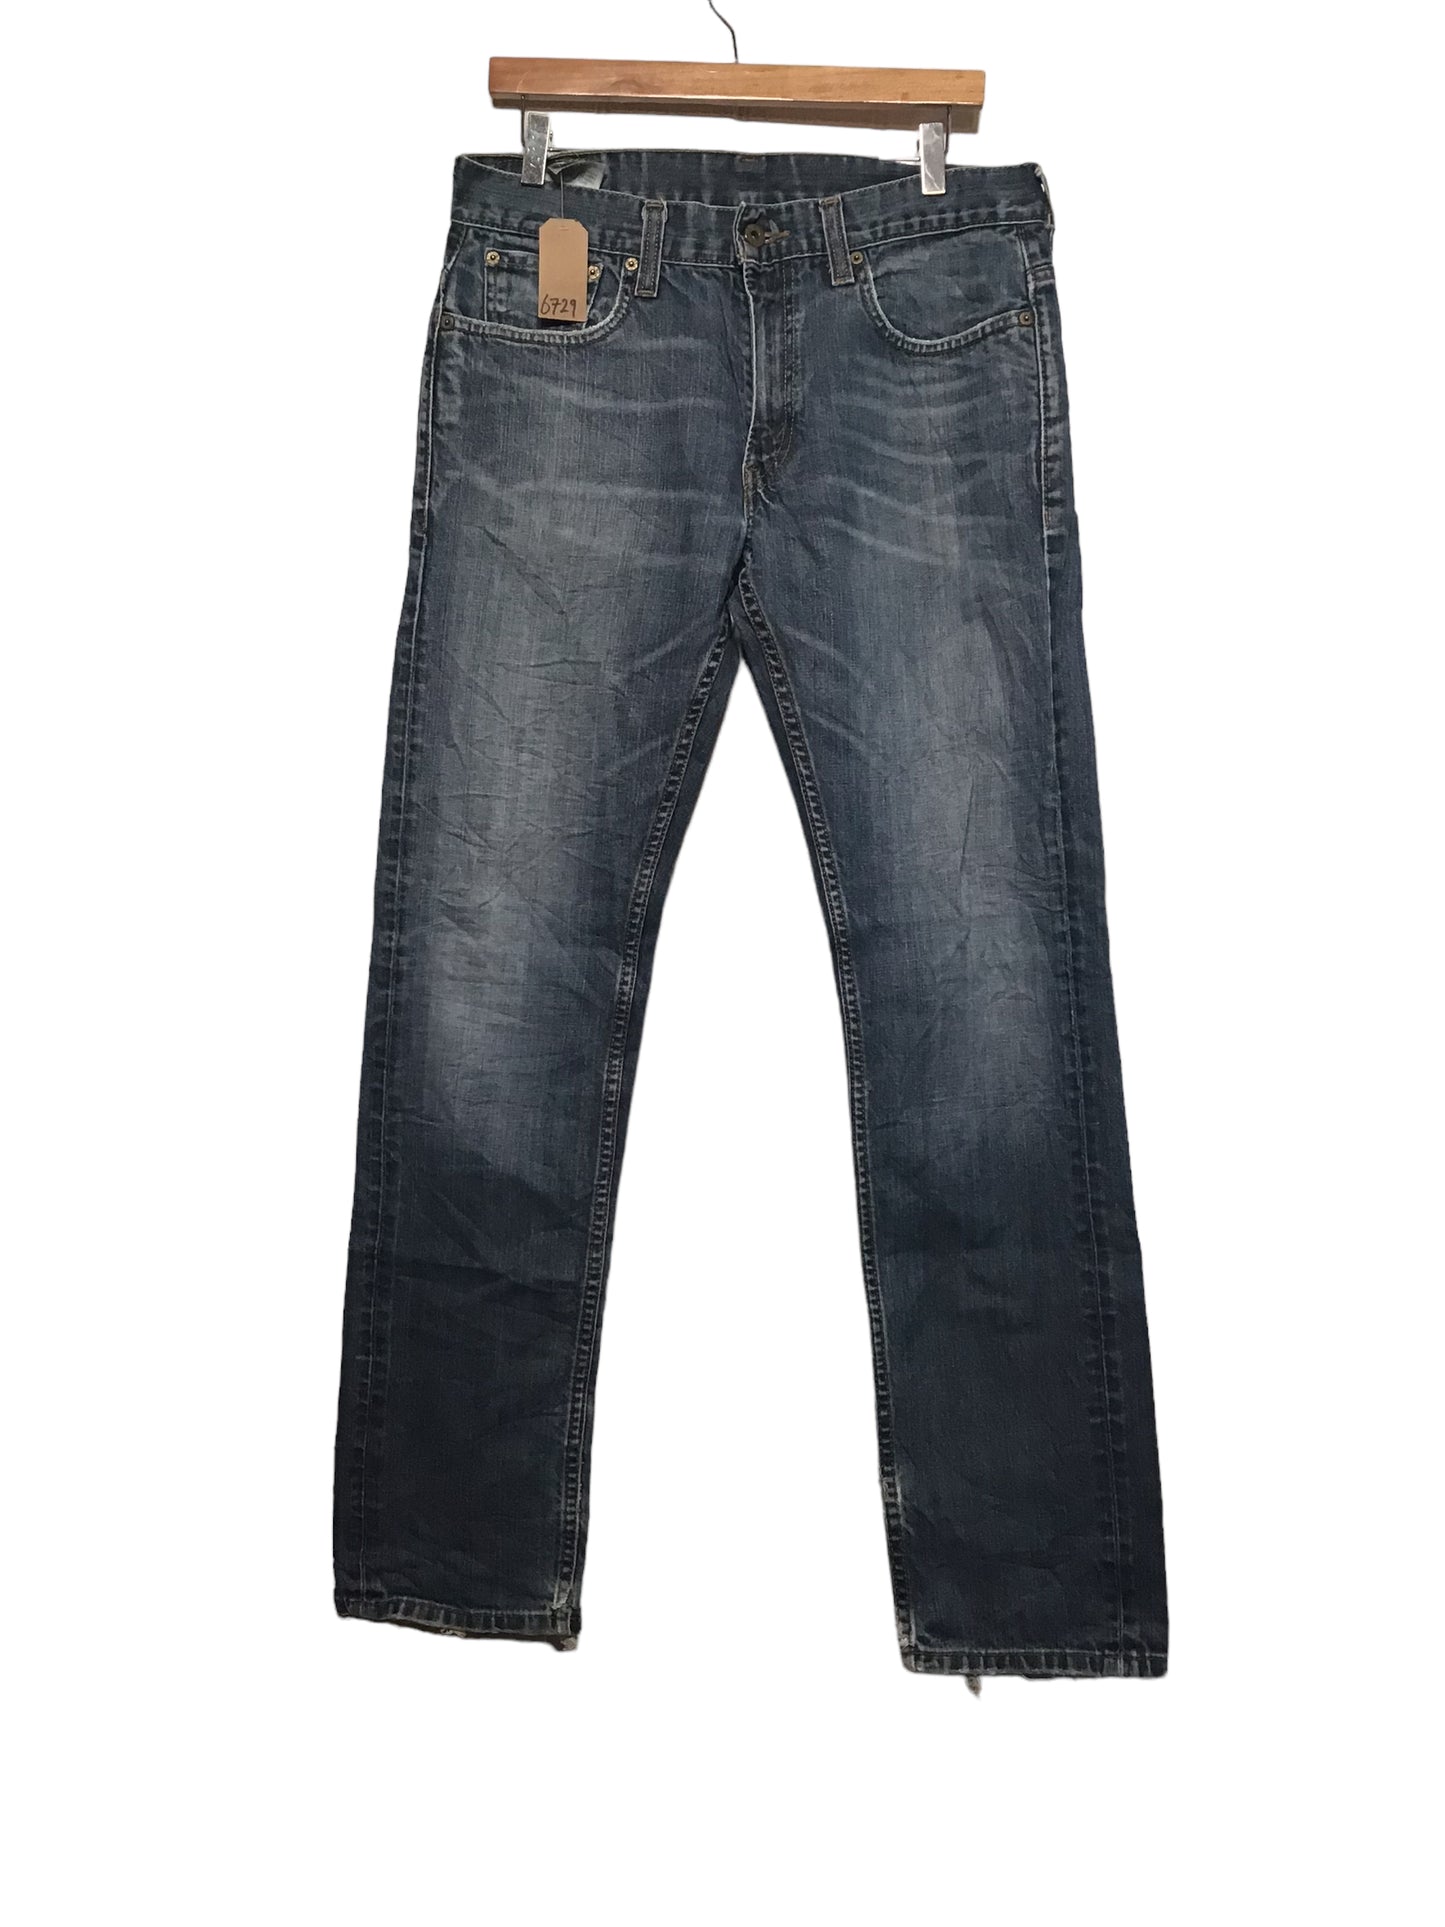 Levi 511 Jeans (34x32)